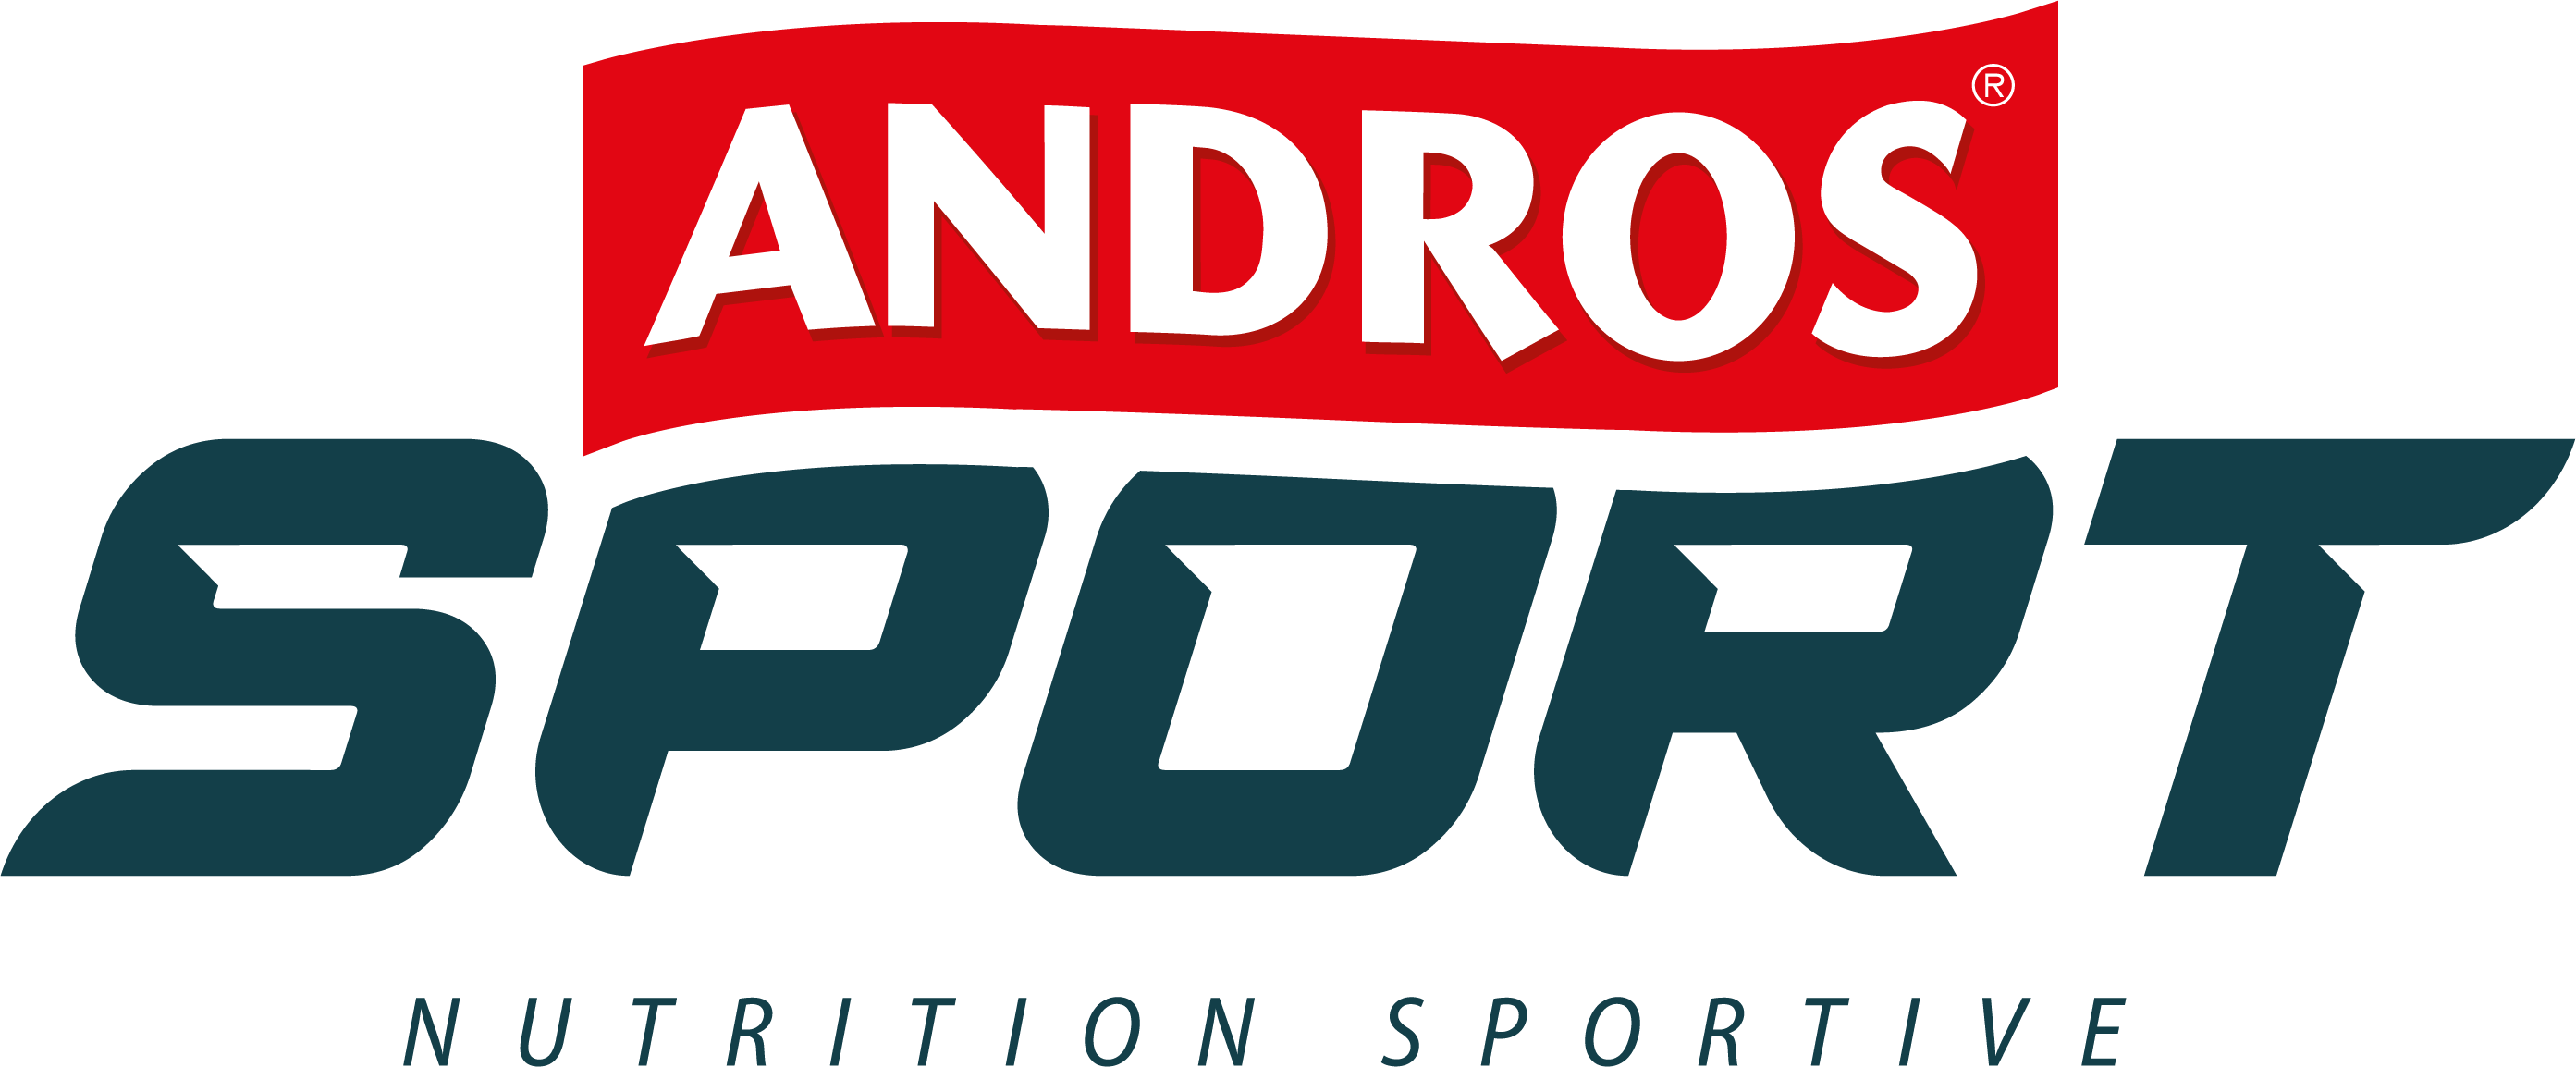 La marque Andros Sport – Andros